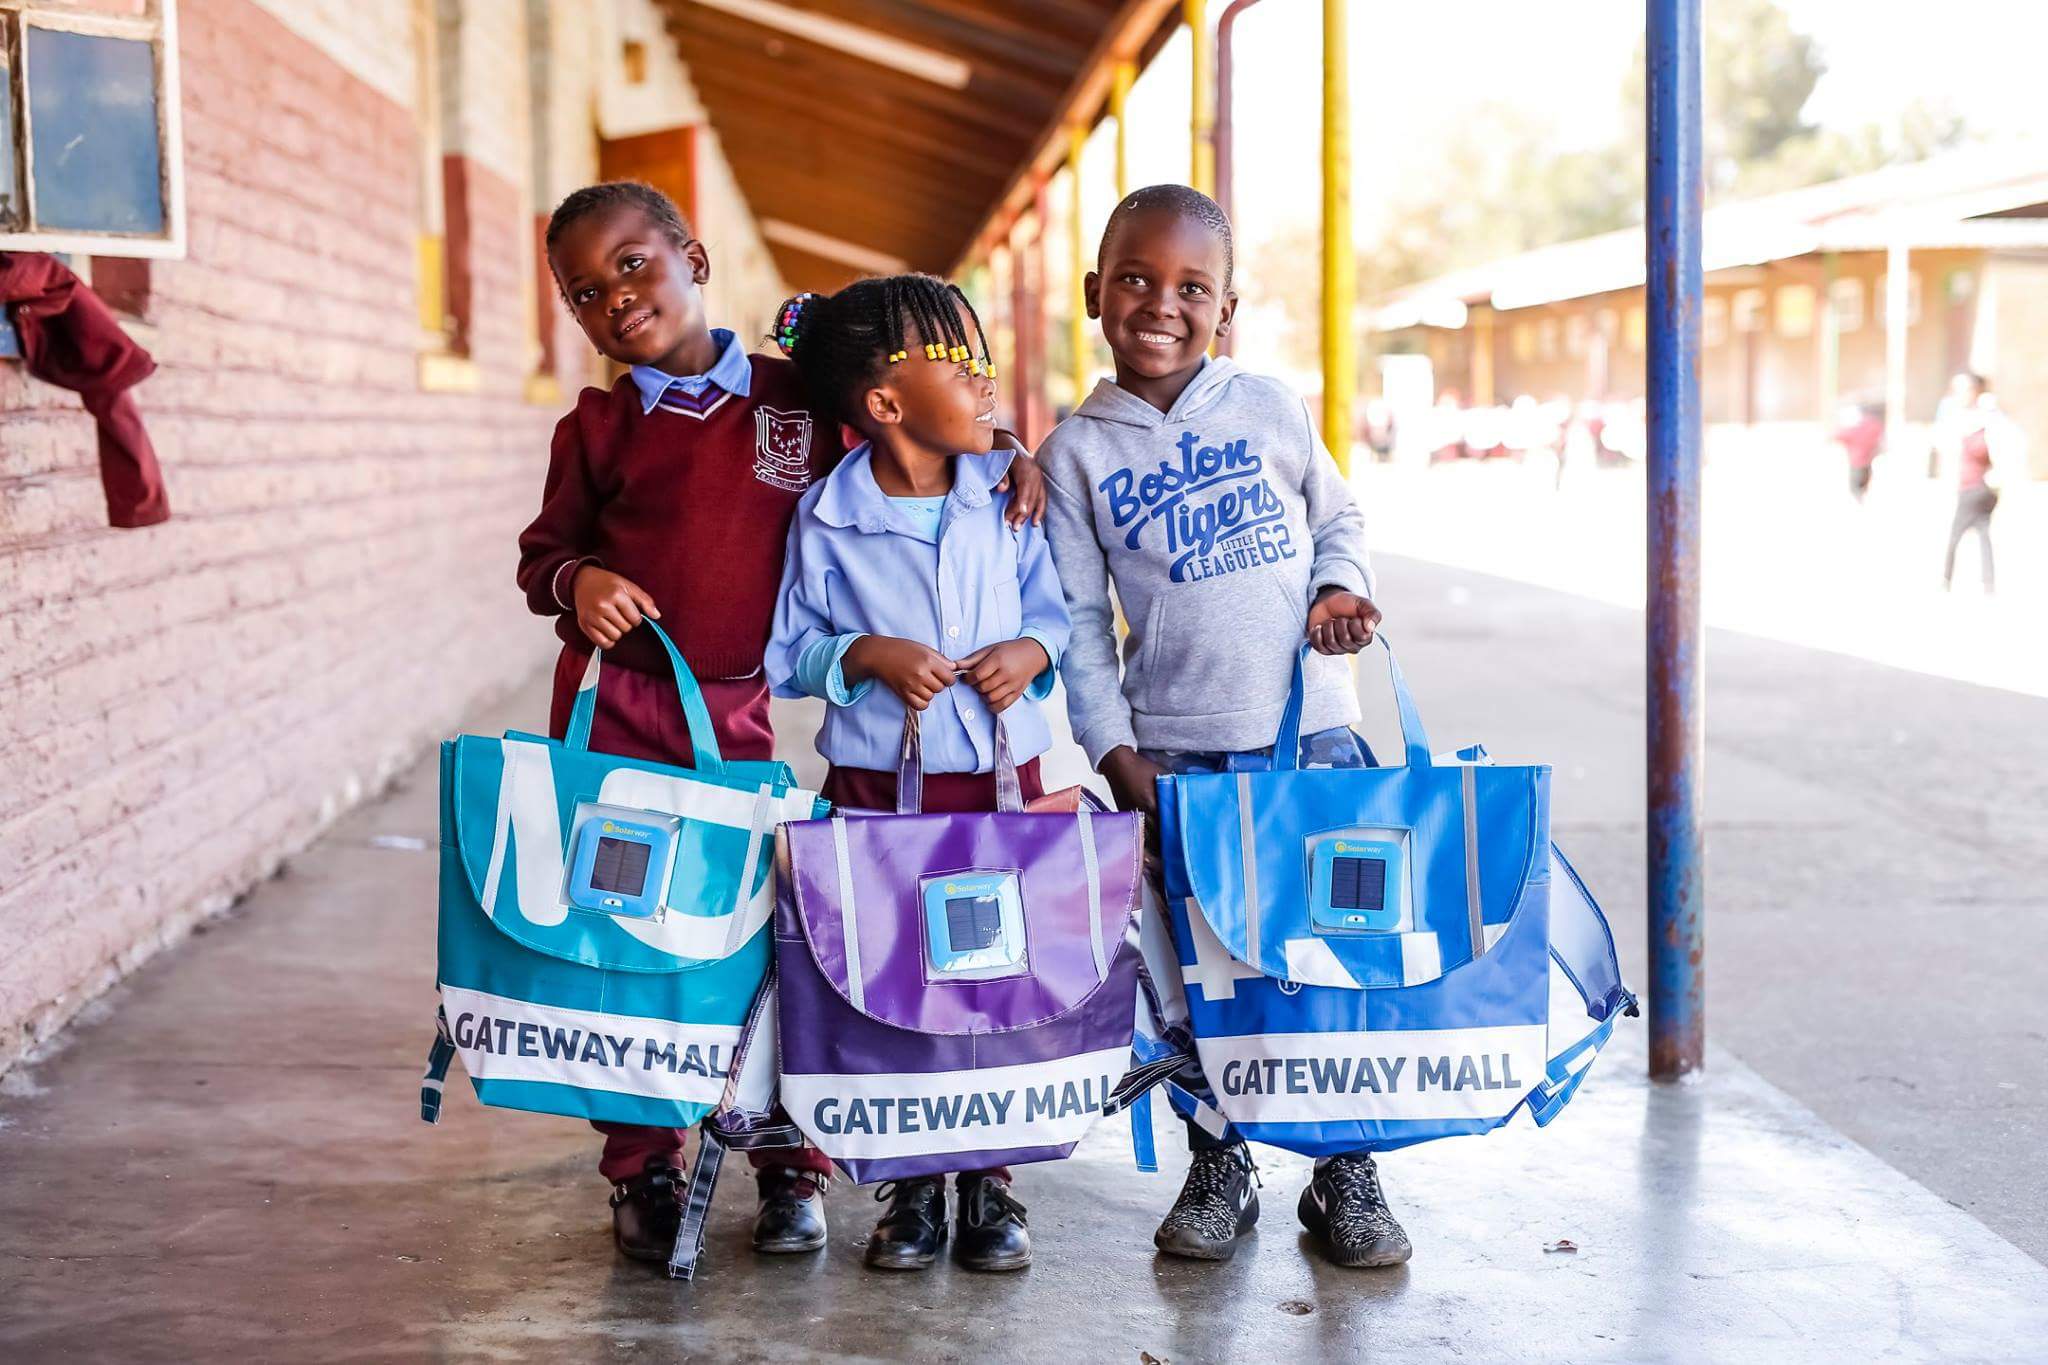 De llevar sus libros en una bolsa de plástico o de no tener ninguna mochila, al regalar a un niño una mochila Repurpose, se contribuye a cambiar la vida de ese niño al animarle a seguir en la escuela.